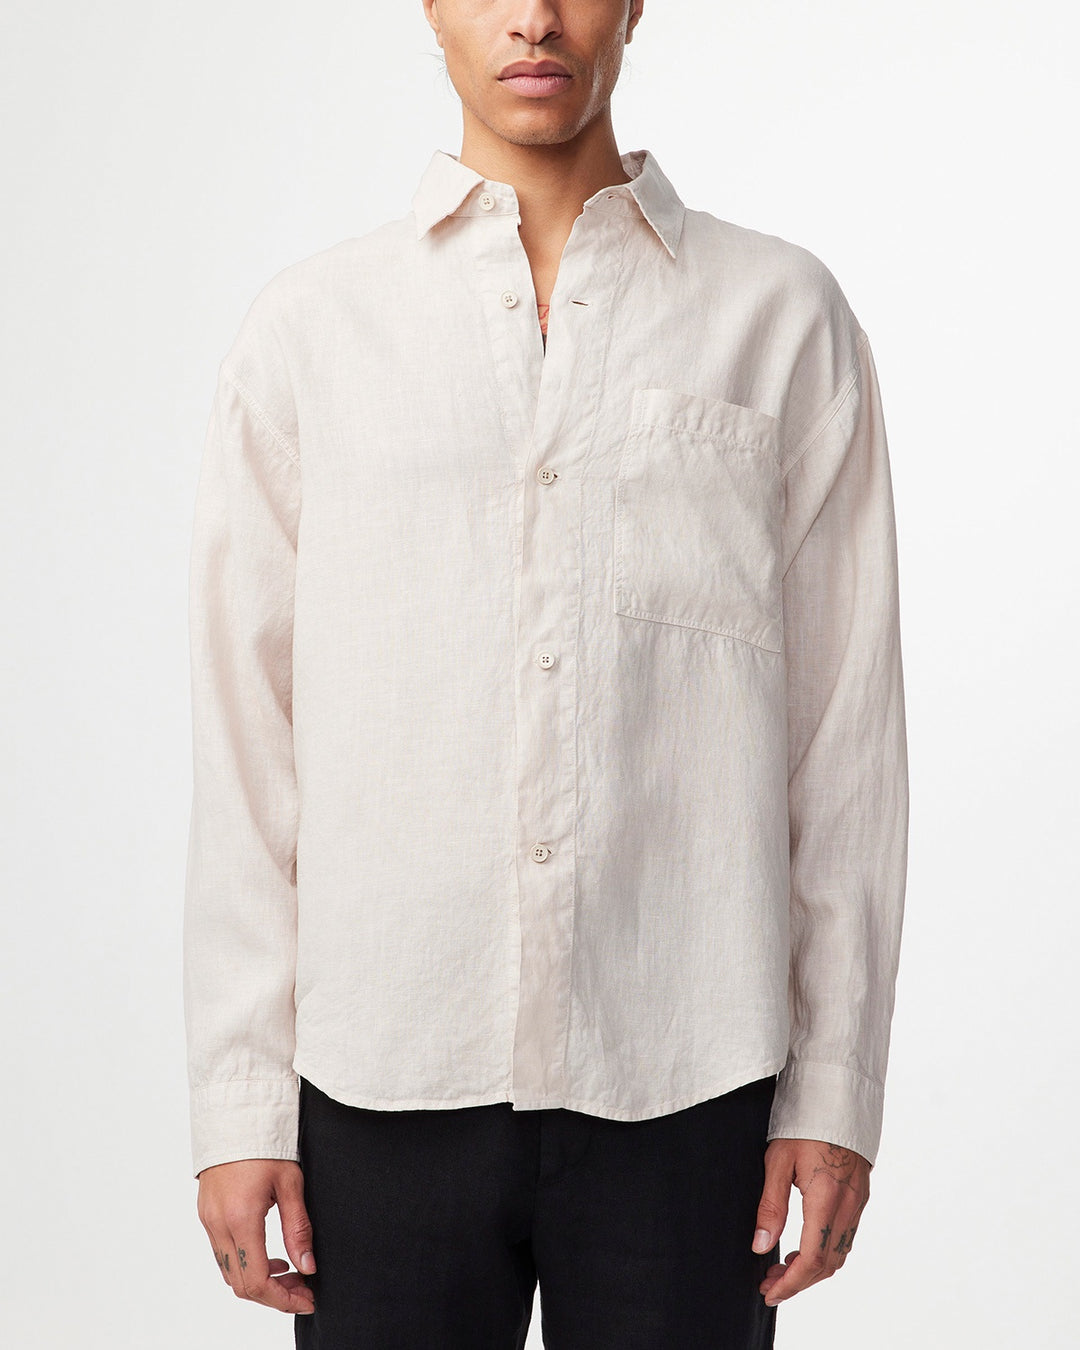 NN07 - Adwin 5706 Linen LS Shirt in Oat | Buster McGee Daylesford